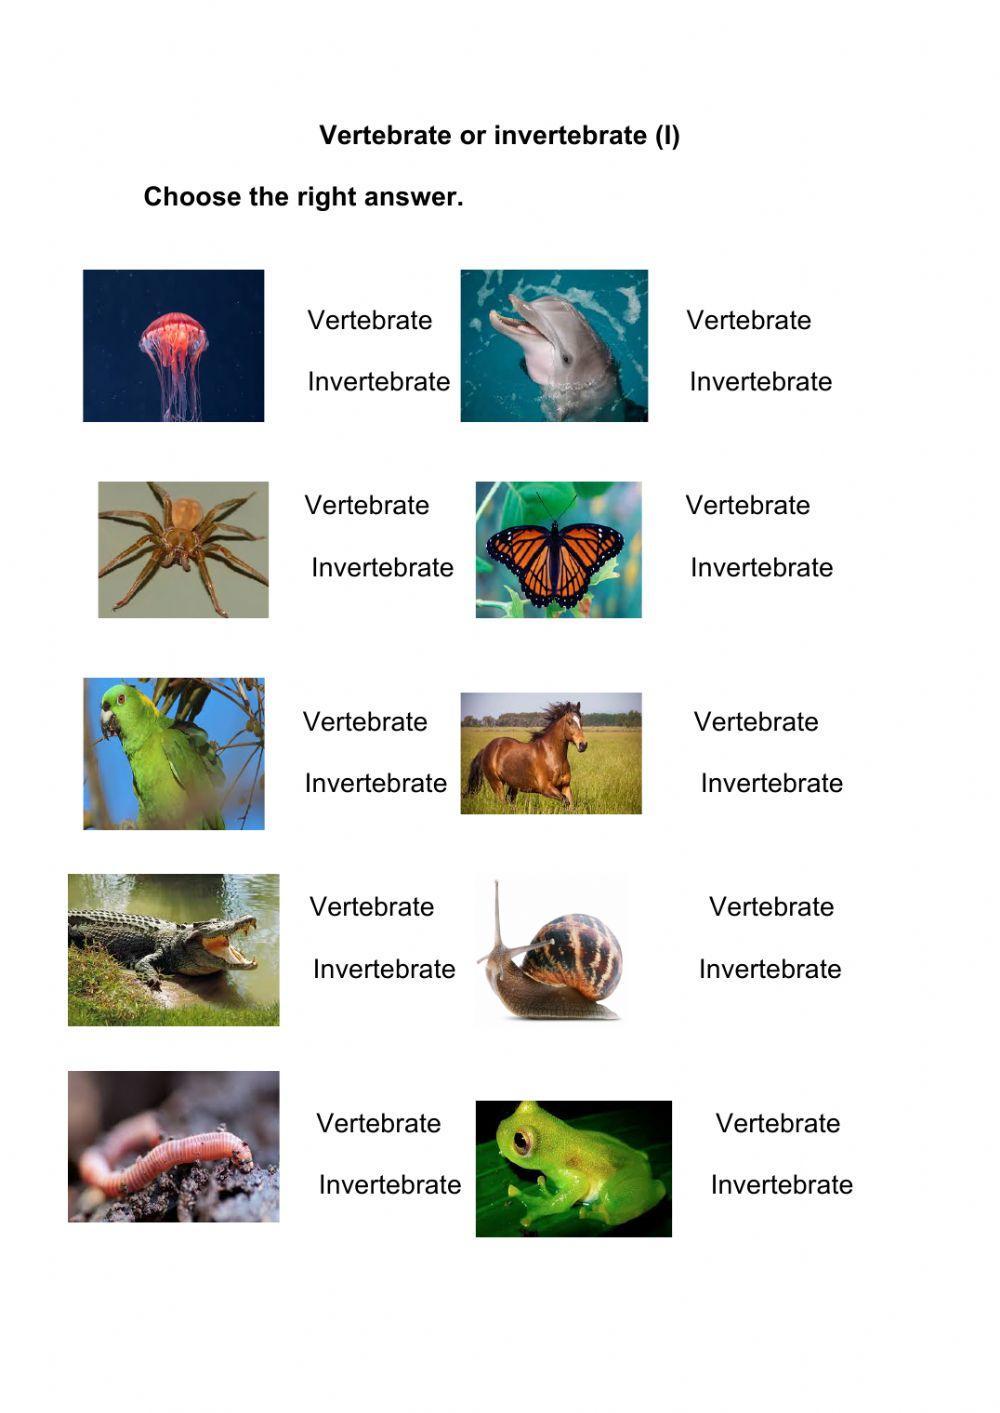 Vertebrates versus invertebrates